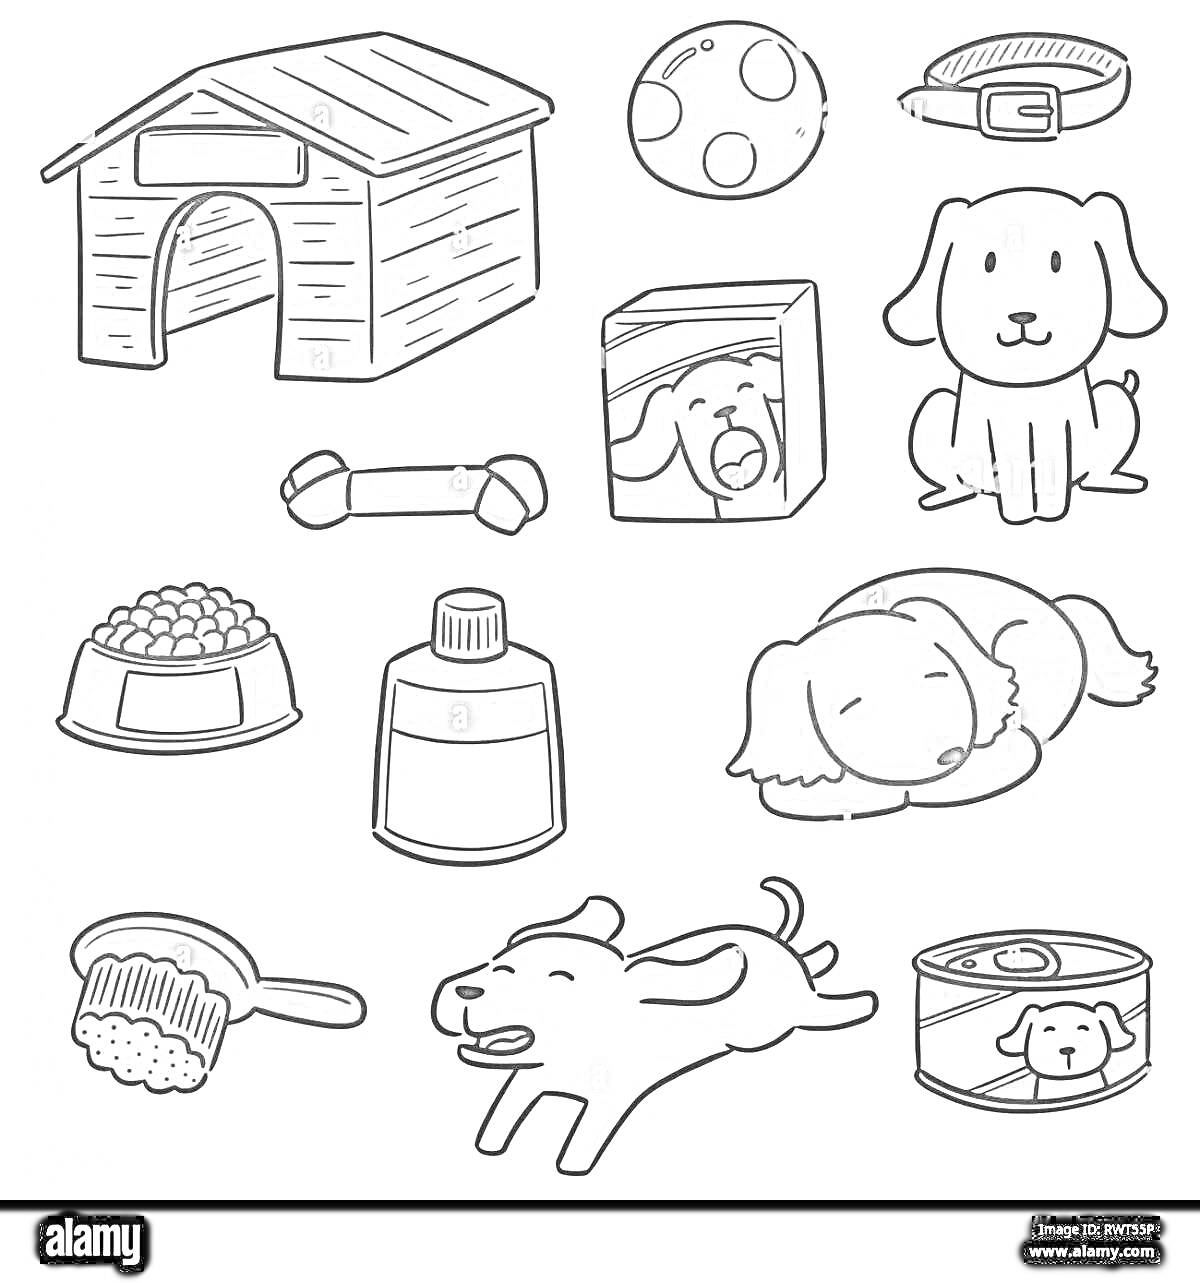 Раскраска Домик, мяч, ошейник, корм, косточка, шампунь, еда, щетка, собака, играющая собака, спящая собака, консервированный корм